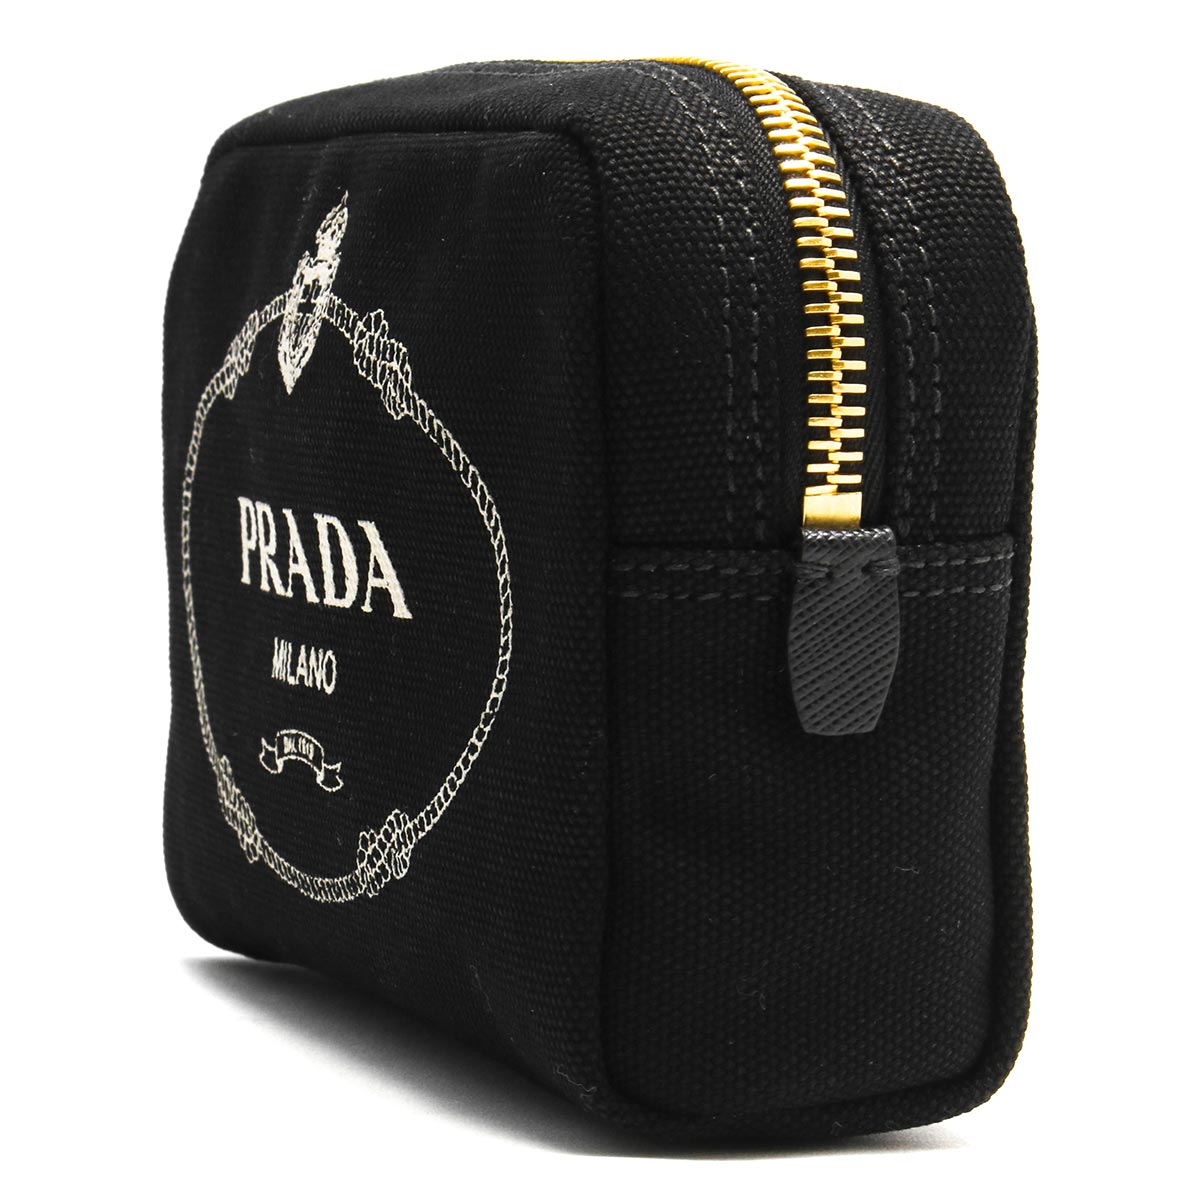 プラダ ポーチ バッグ レディース カナパ ロゴ ブラック&タルコホワイト 1NA021 20L F0N12 PRADA